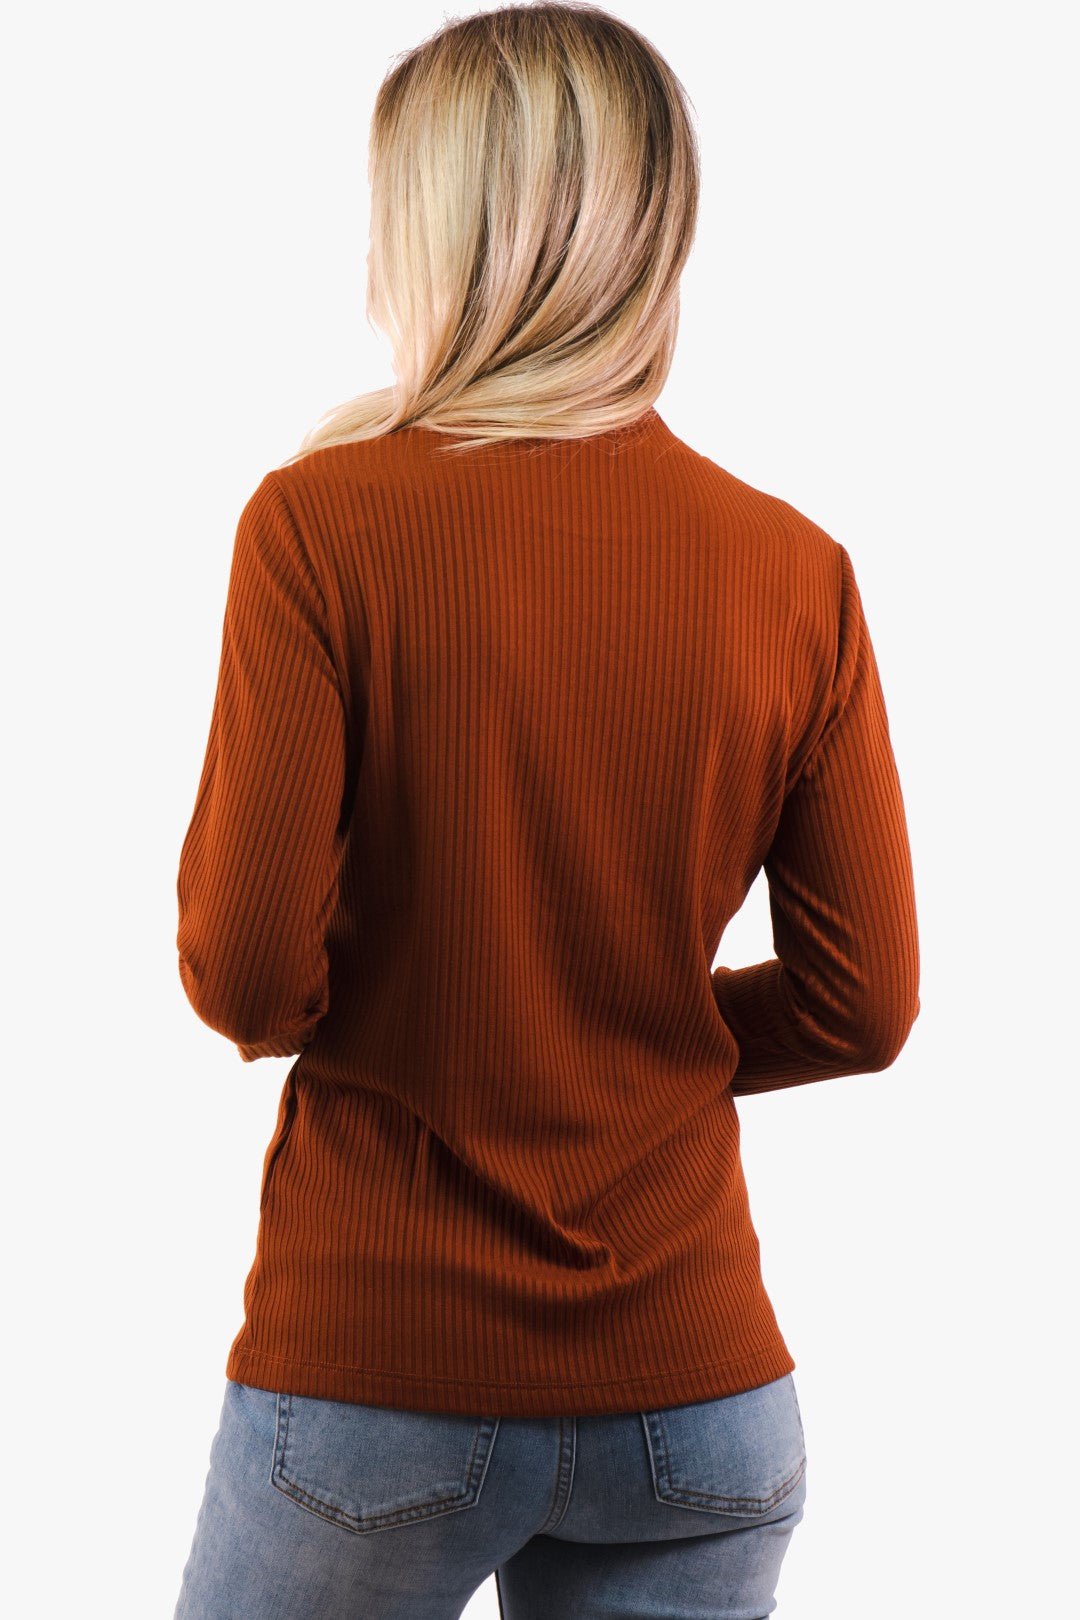 Esqualo sweater in Copper color